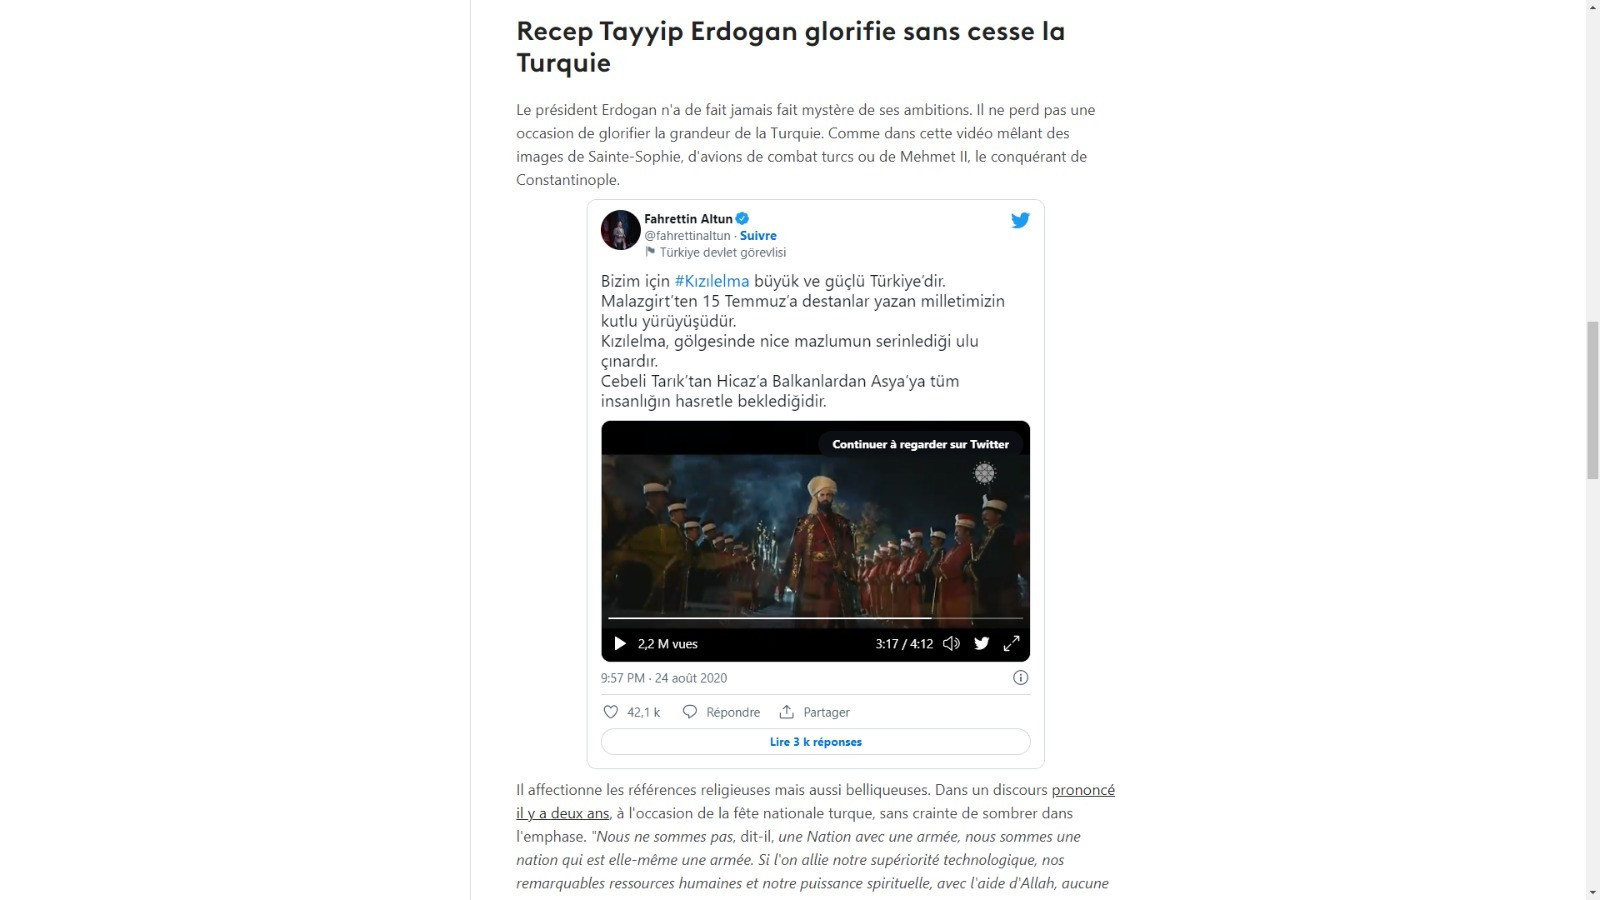 Fransız kamu yayıncısı France Info: Erdoğan Türkiye'yi daima yüceltiyor